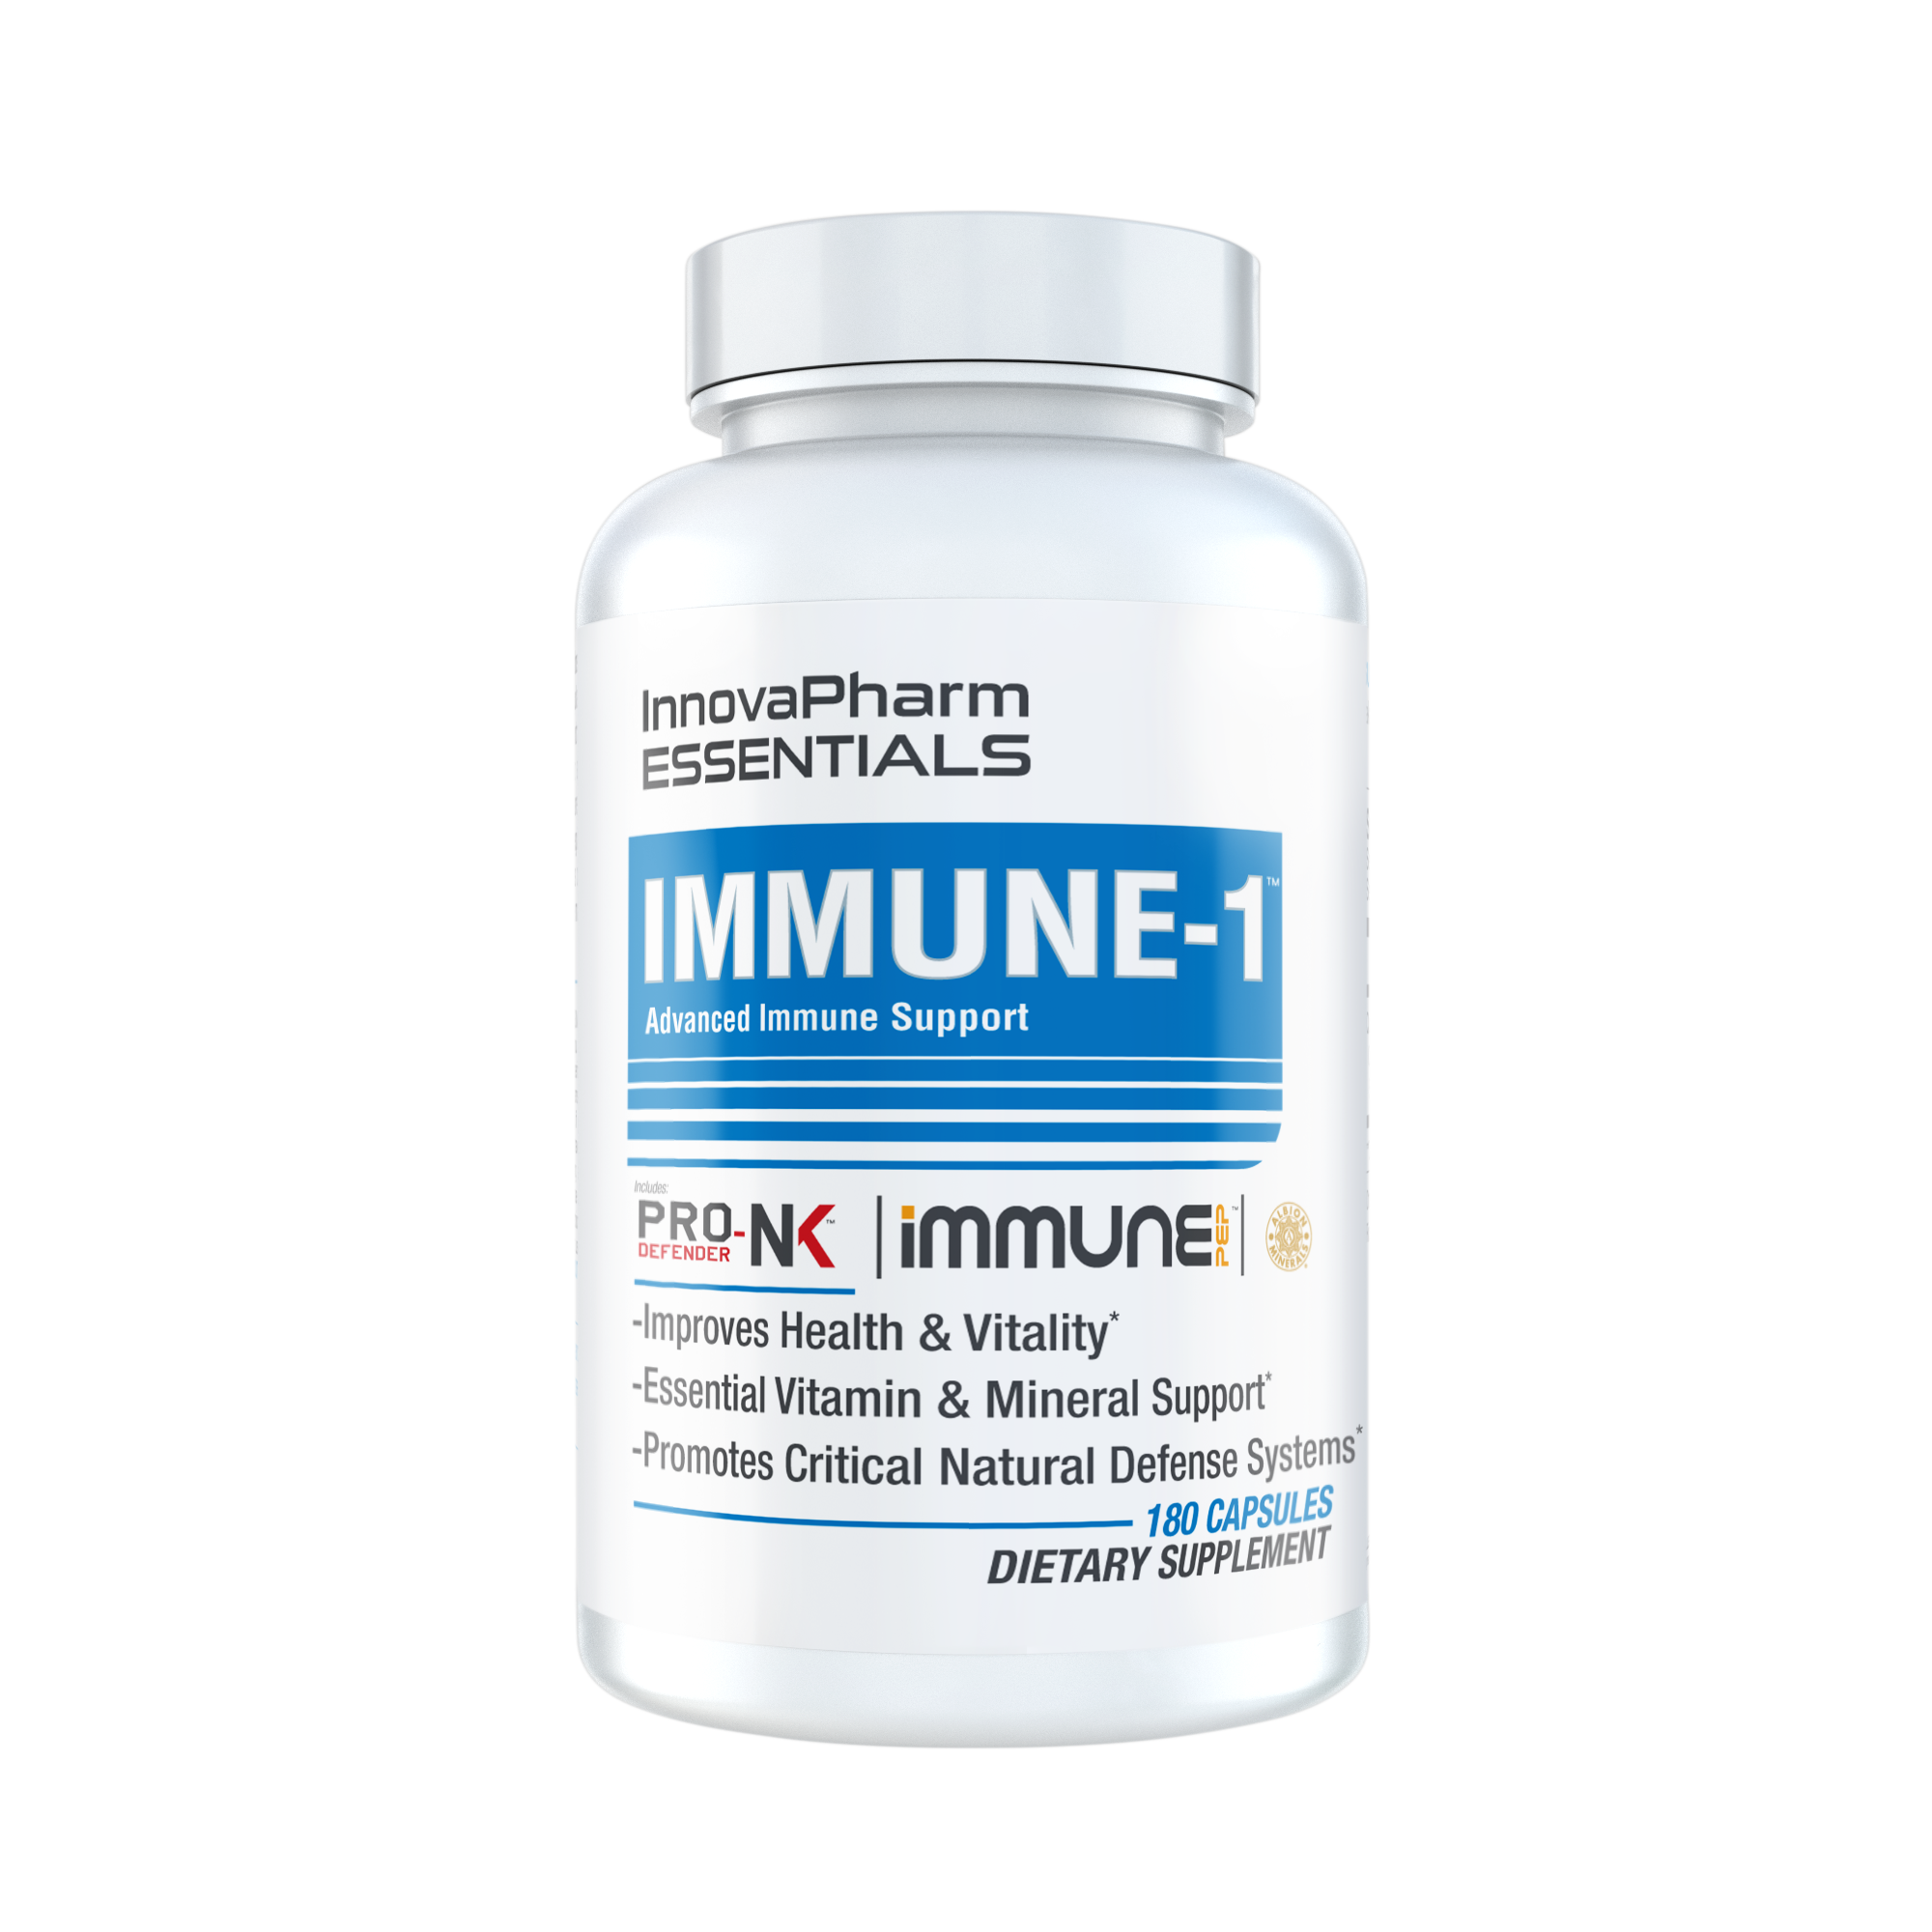 Innovapharm Essentials Immune-1